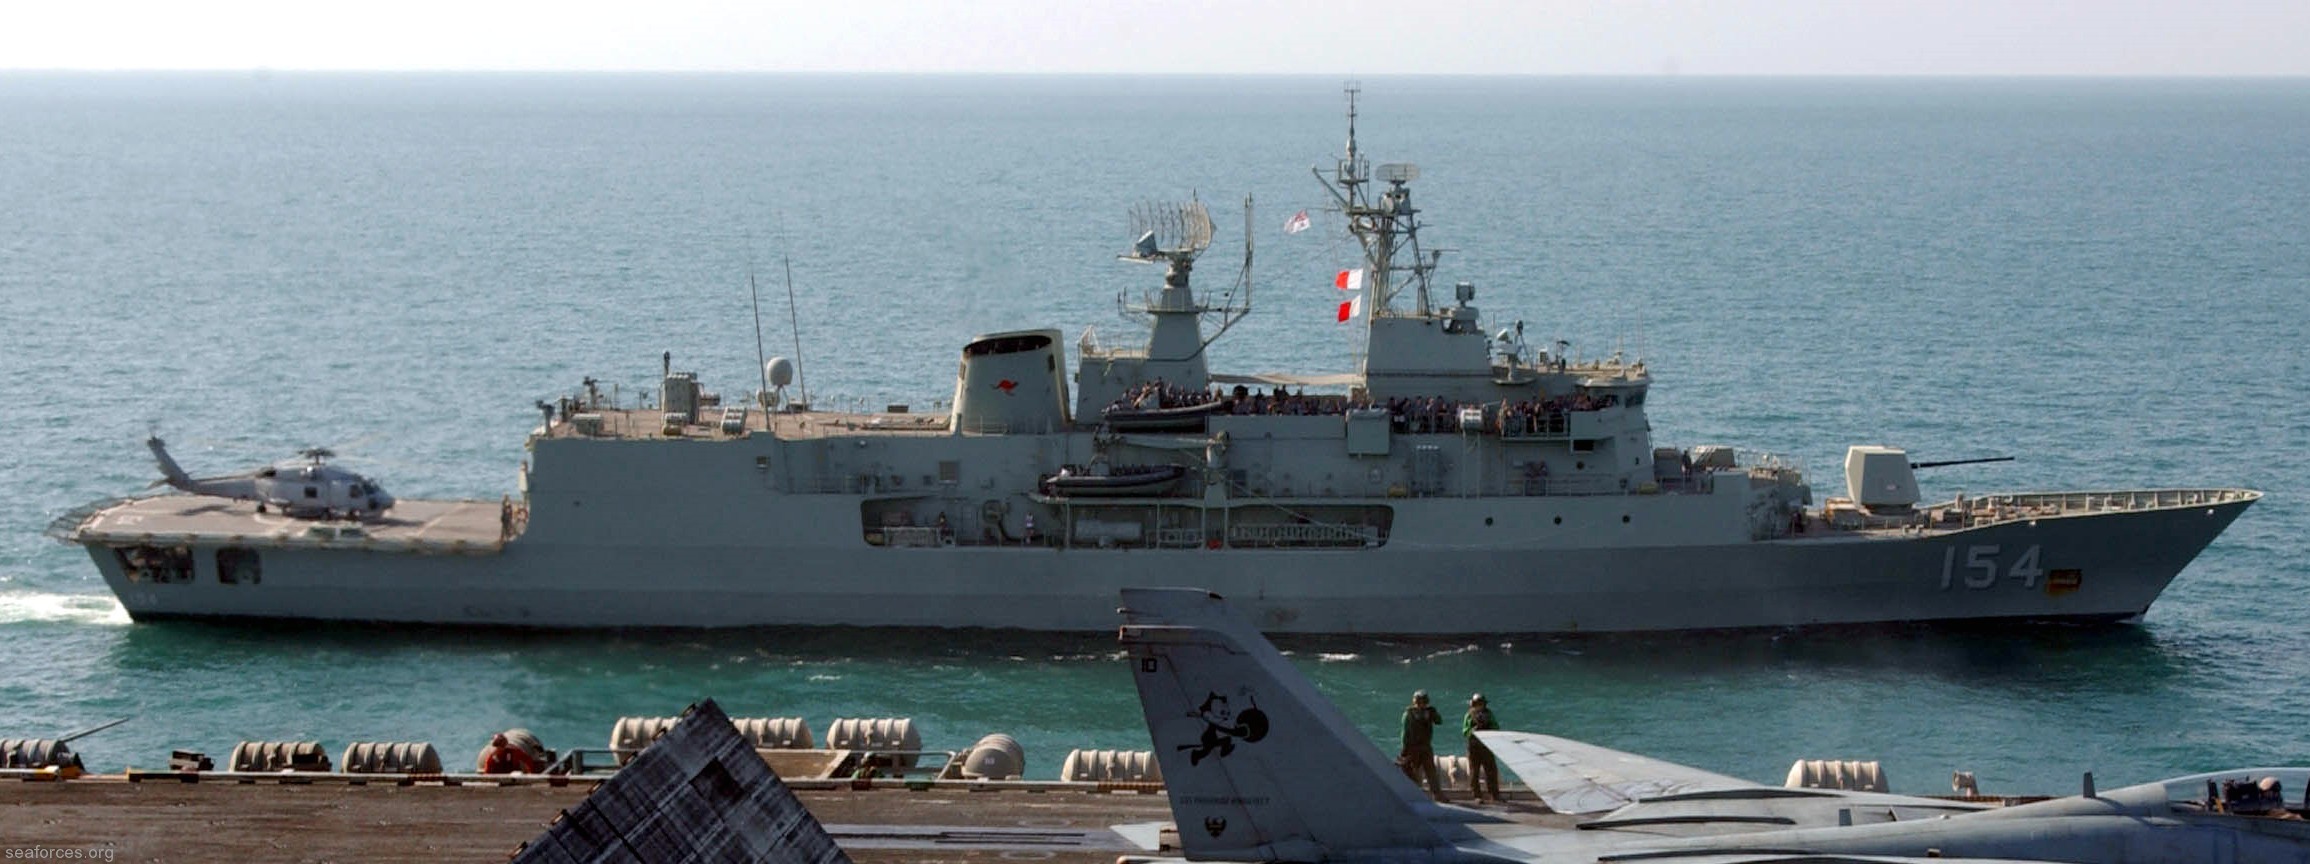 hmas parramatta ffh-154 anzac class frigate royal australian navy